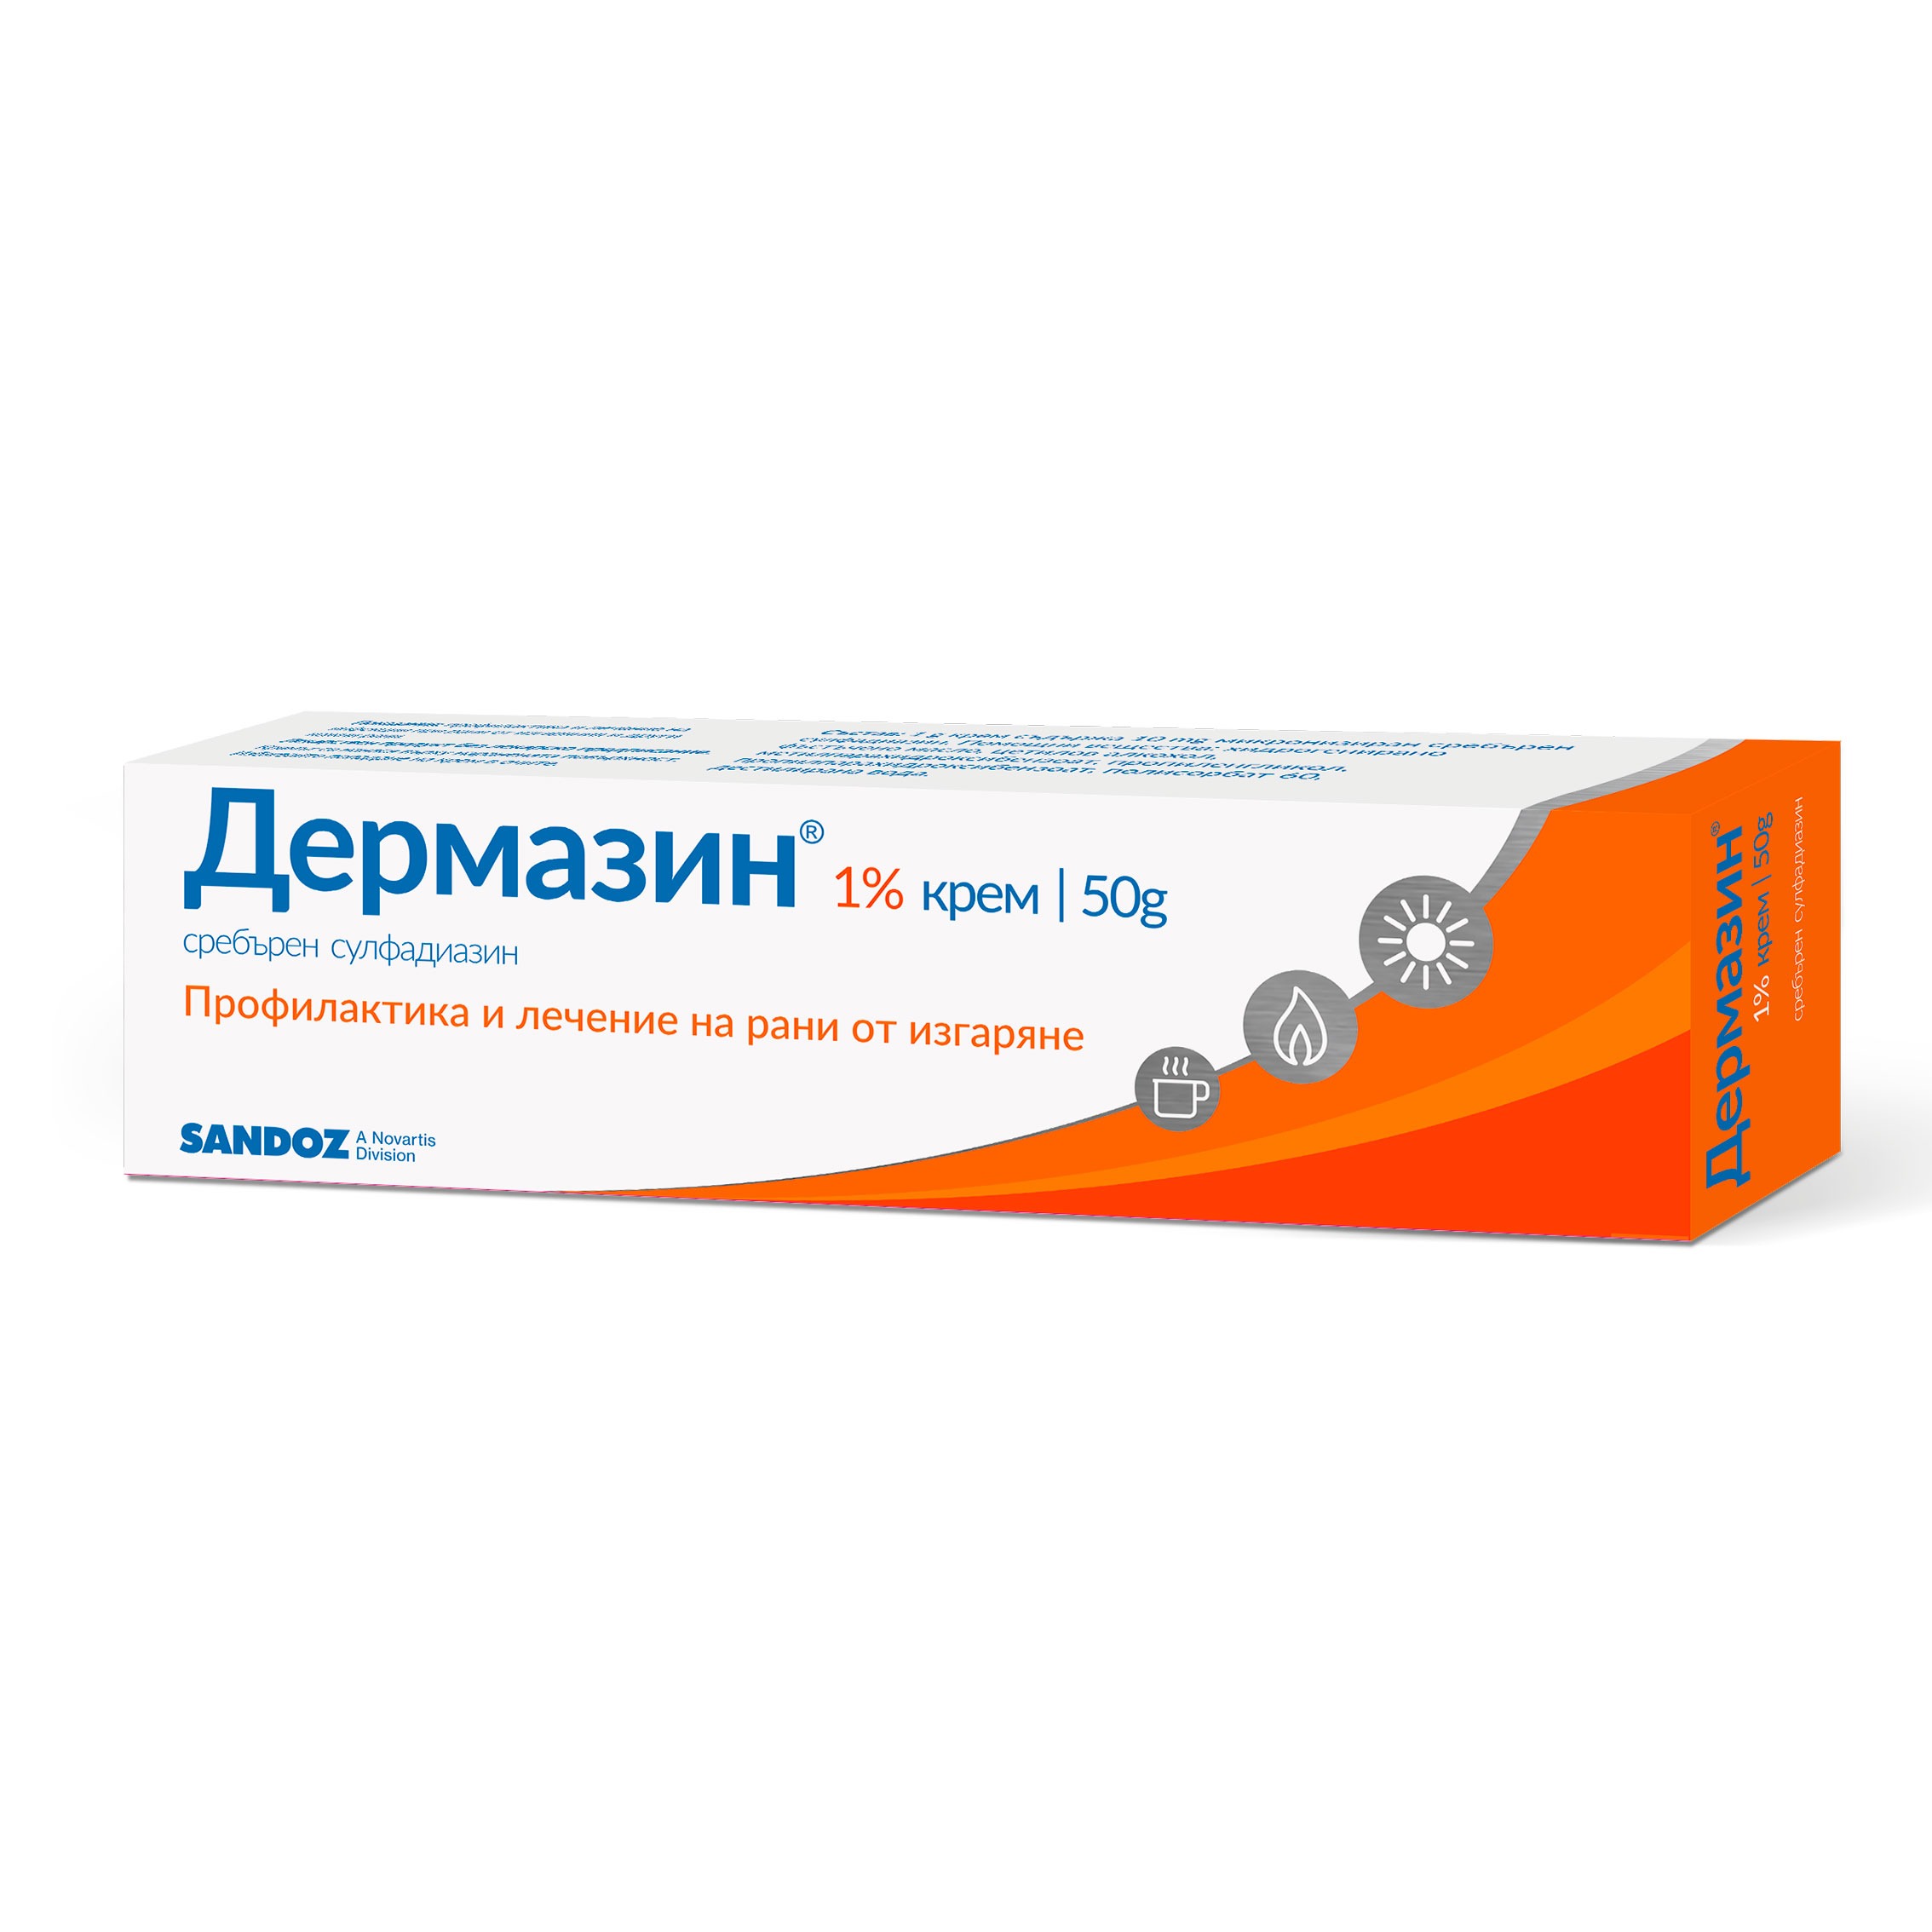 Дермазин 1% крем при рани и изгаряния 50 g - Sandoz - Аптеки 36.6